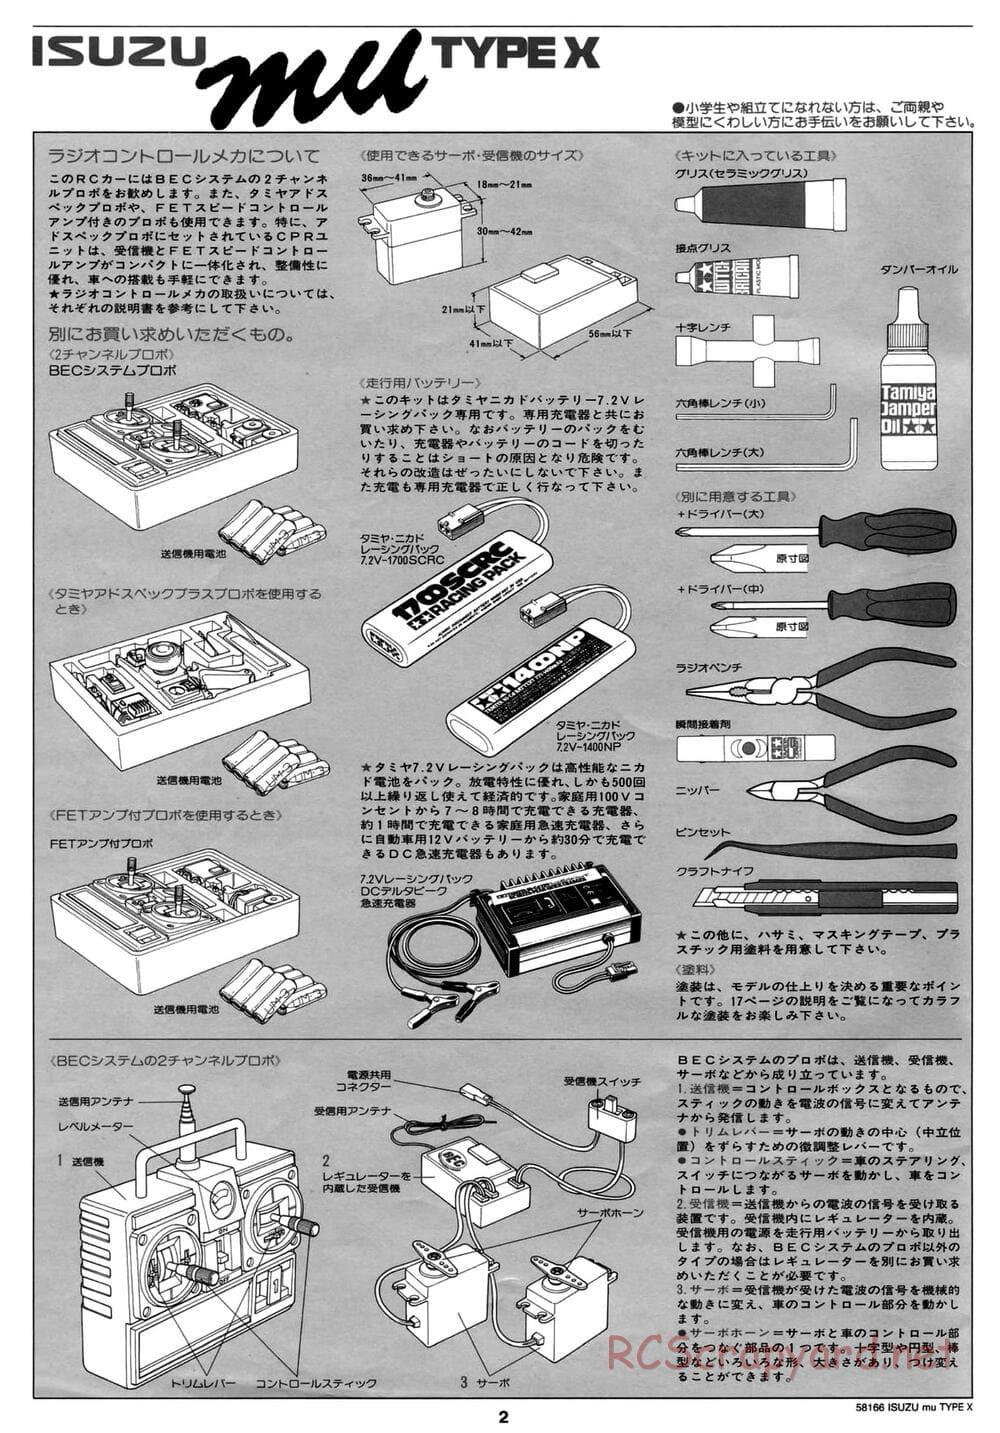 Tamiya - Isuzu Mu Type X - CC-01 Chassis - Manual - Page 2